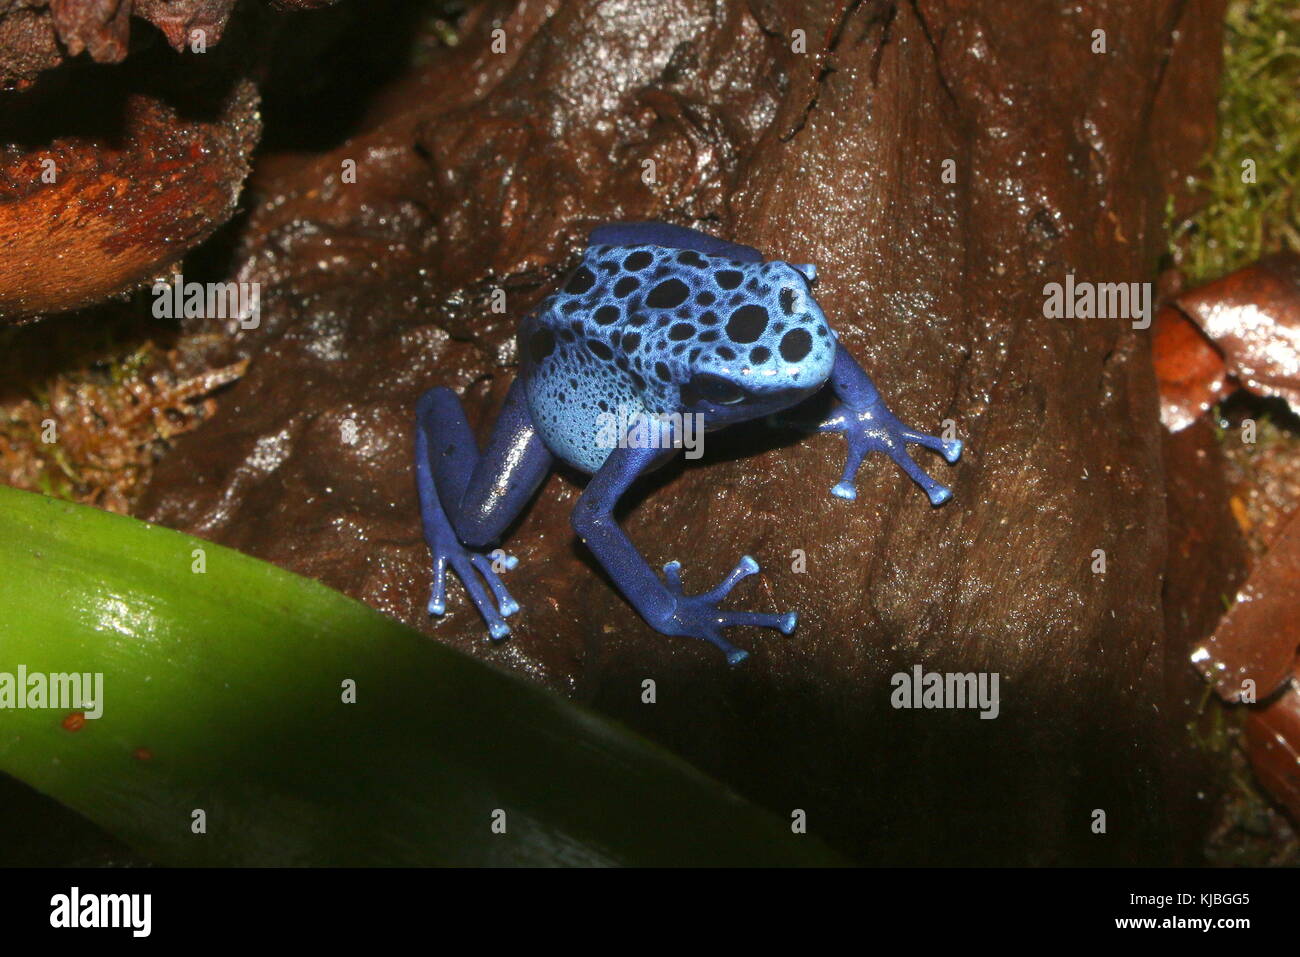 South American Blue poison dart frog / arrow frog (Dentrobates tinctorius azureus) on  a leaf. Stock Photo